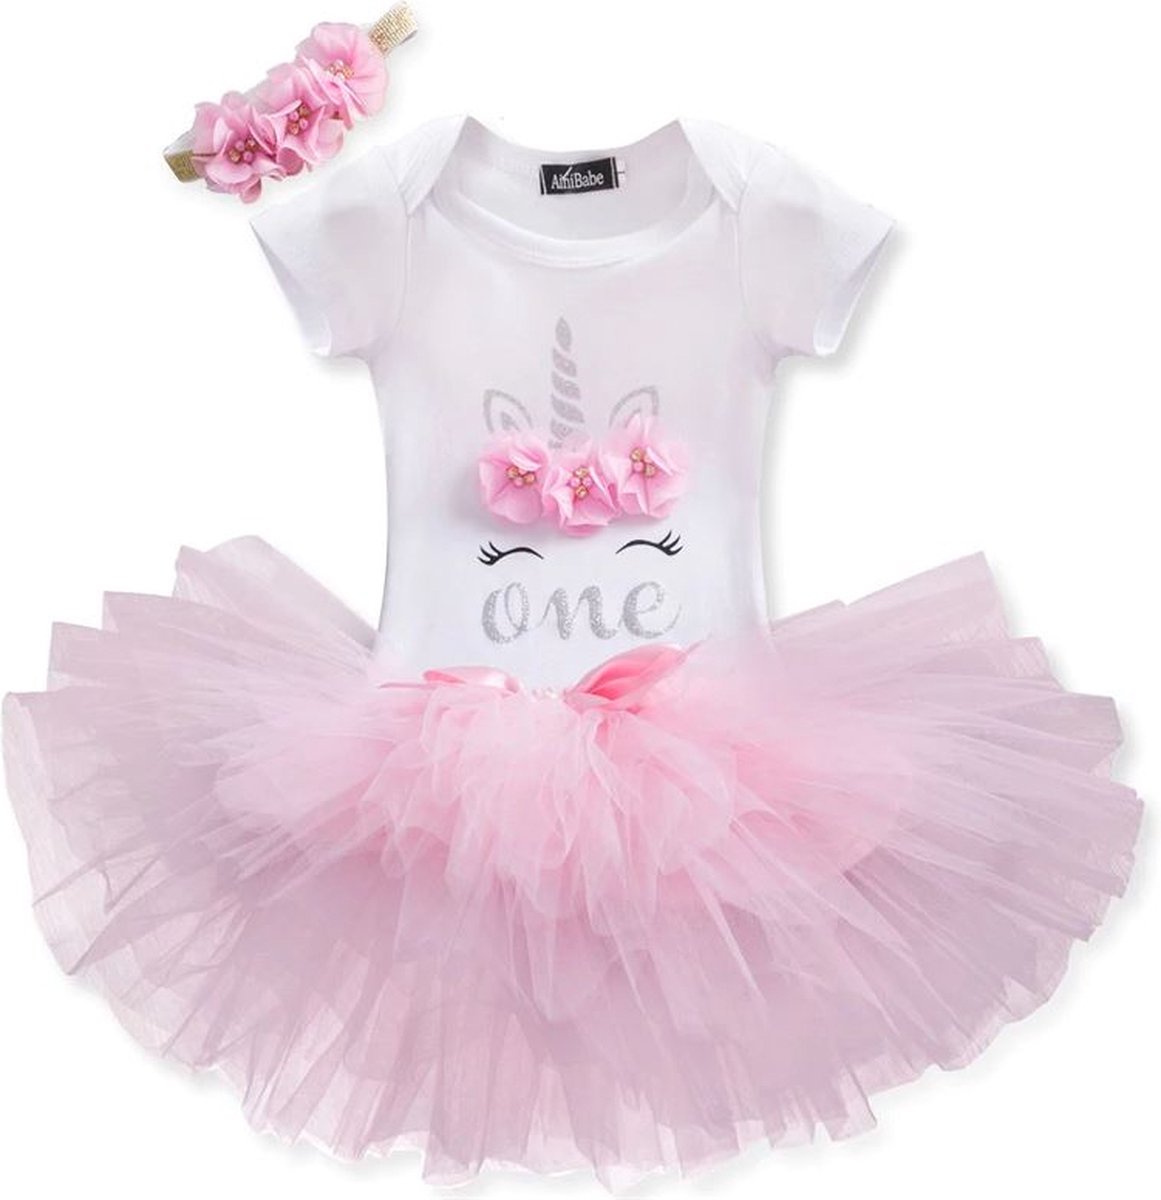 3 in 1 set Cakesmash outfit meisje - Eerste verjaardag Eenhoorn Jurk set - Babykleding - Roze Unicorn - 1 jaar - NNJXD